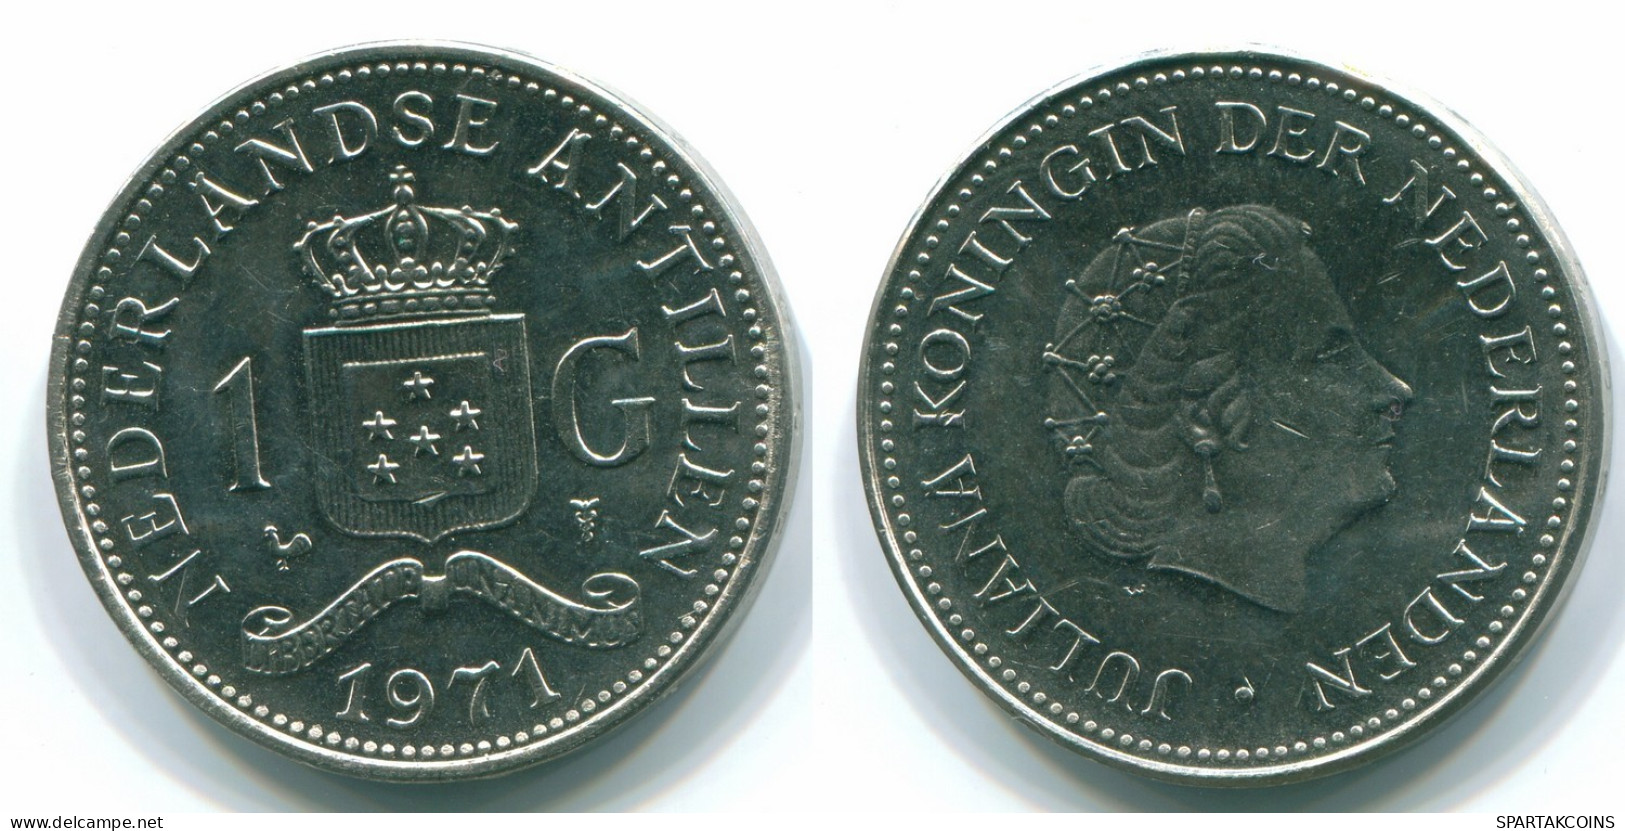 1 GULDEN 1971 NIEDERLÄNDISCHE ANTILLEN Nickel Koloniale Münze #S11930.D.A - Nederlandse Antillen